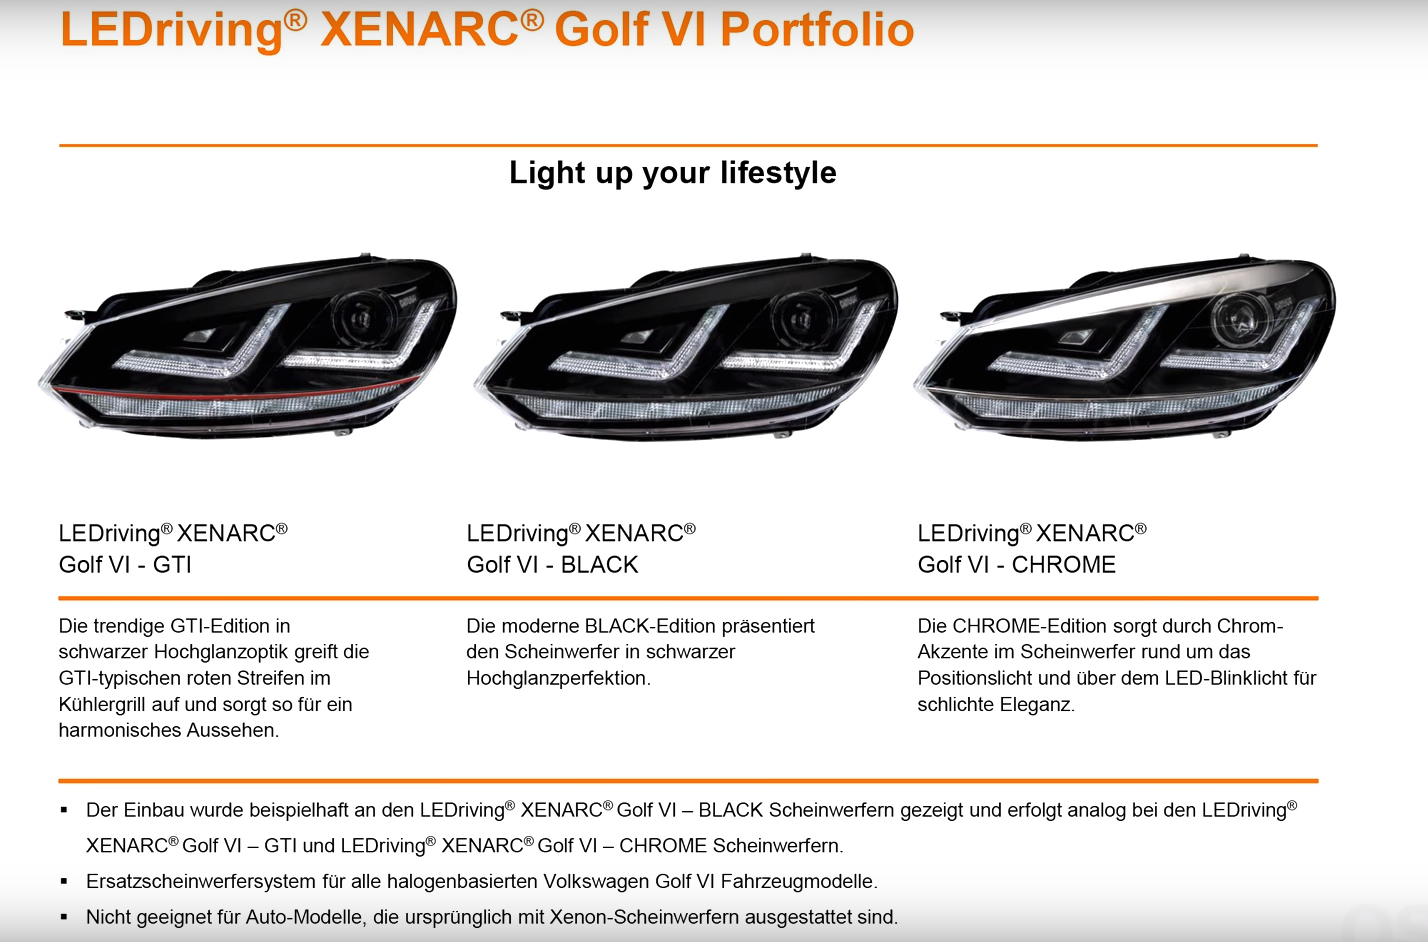 OSRAM LEDriving XENARC Scheinwerfer für Golf VI: Installationsvideo 